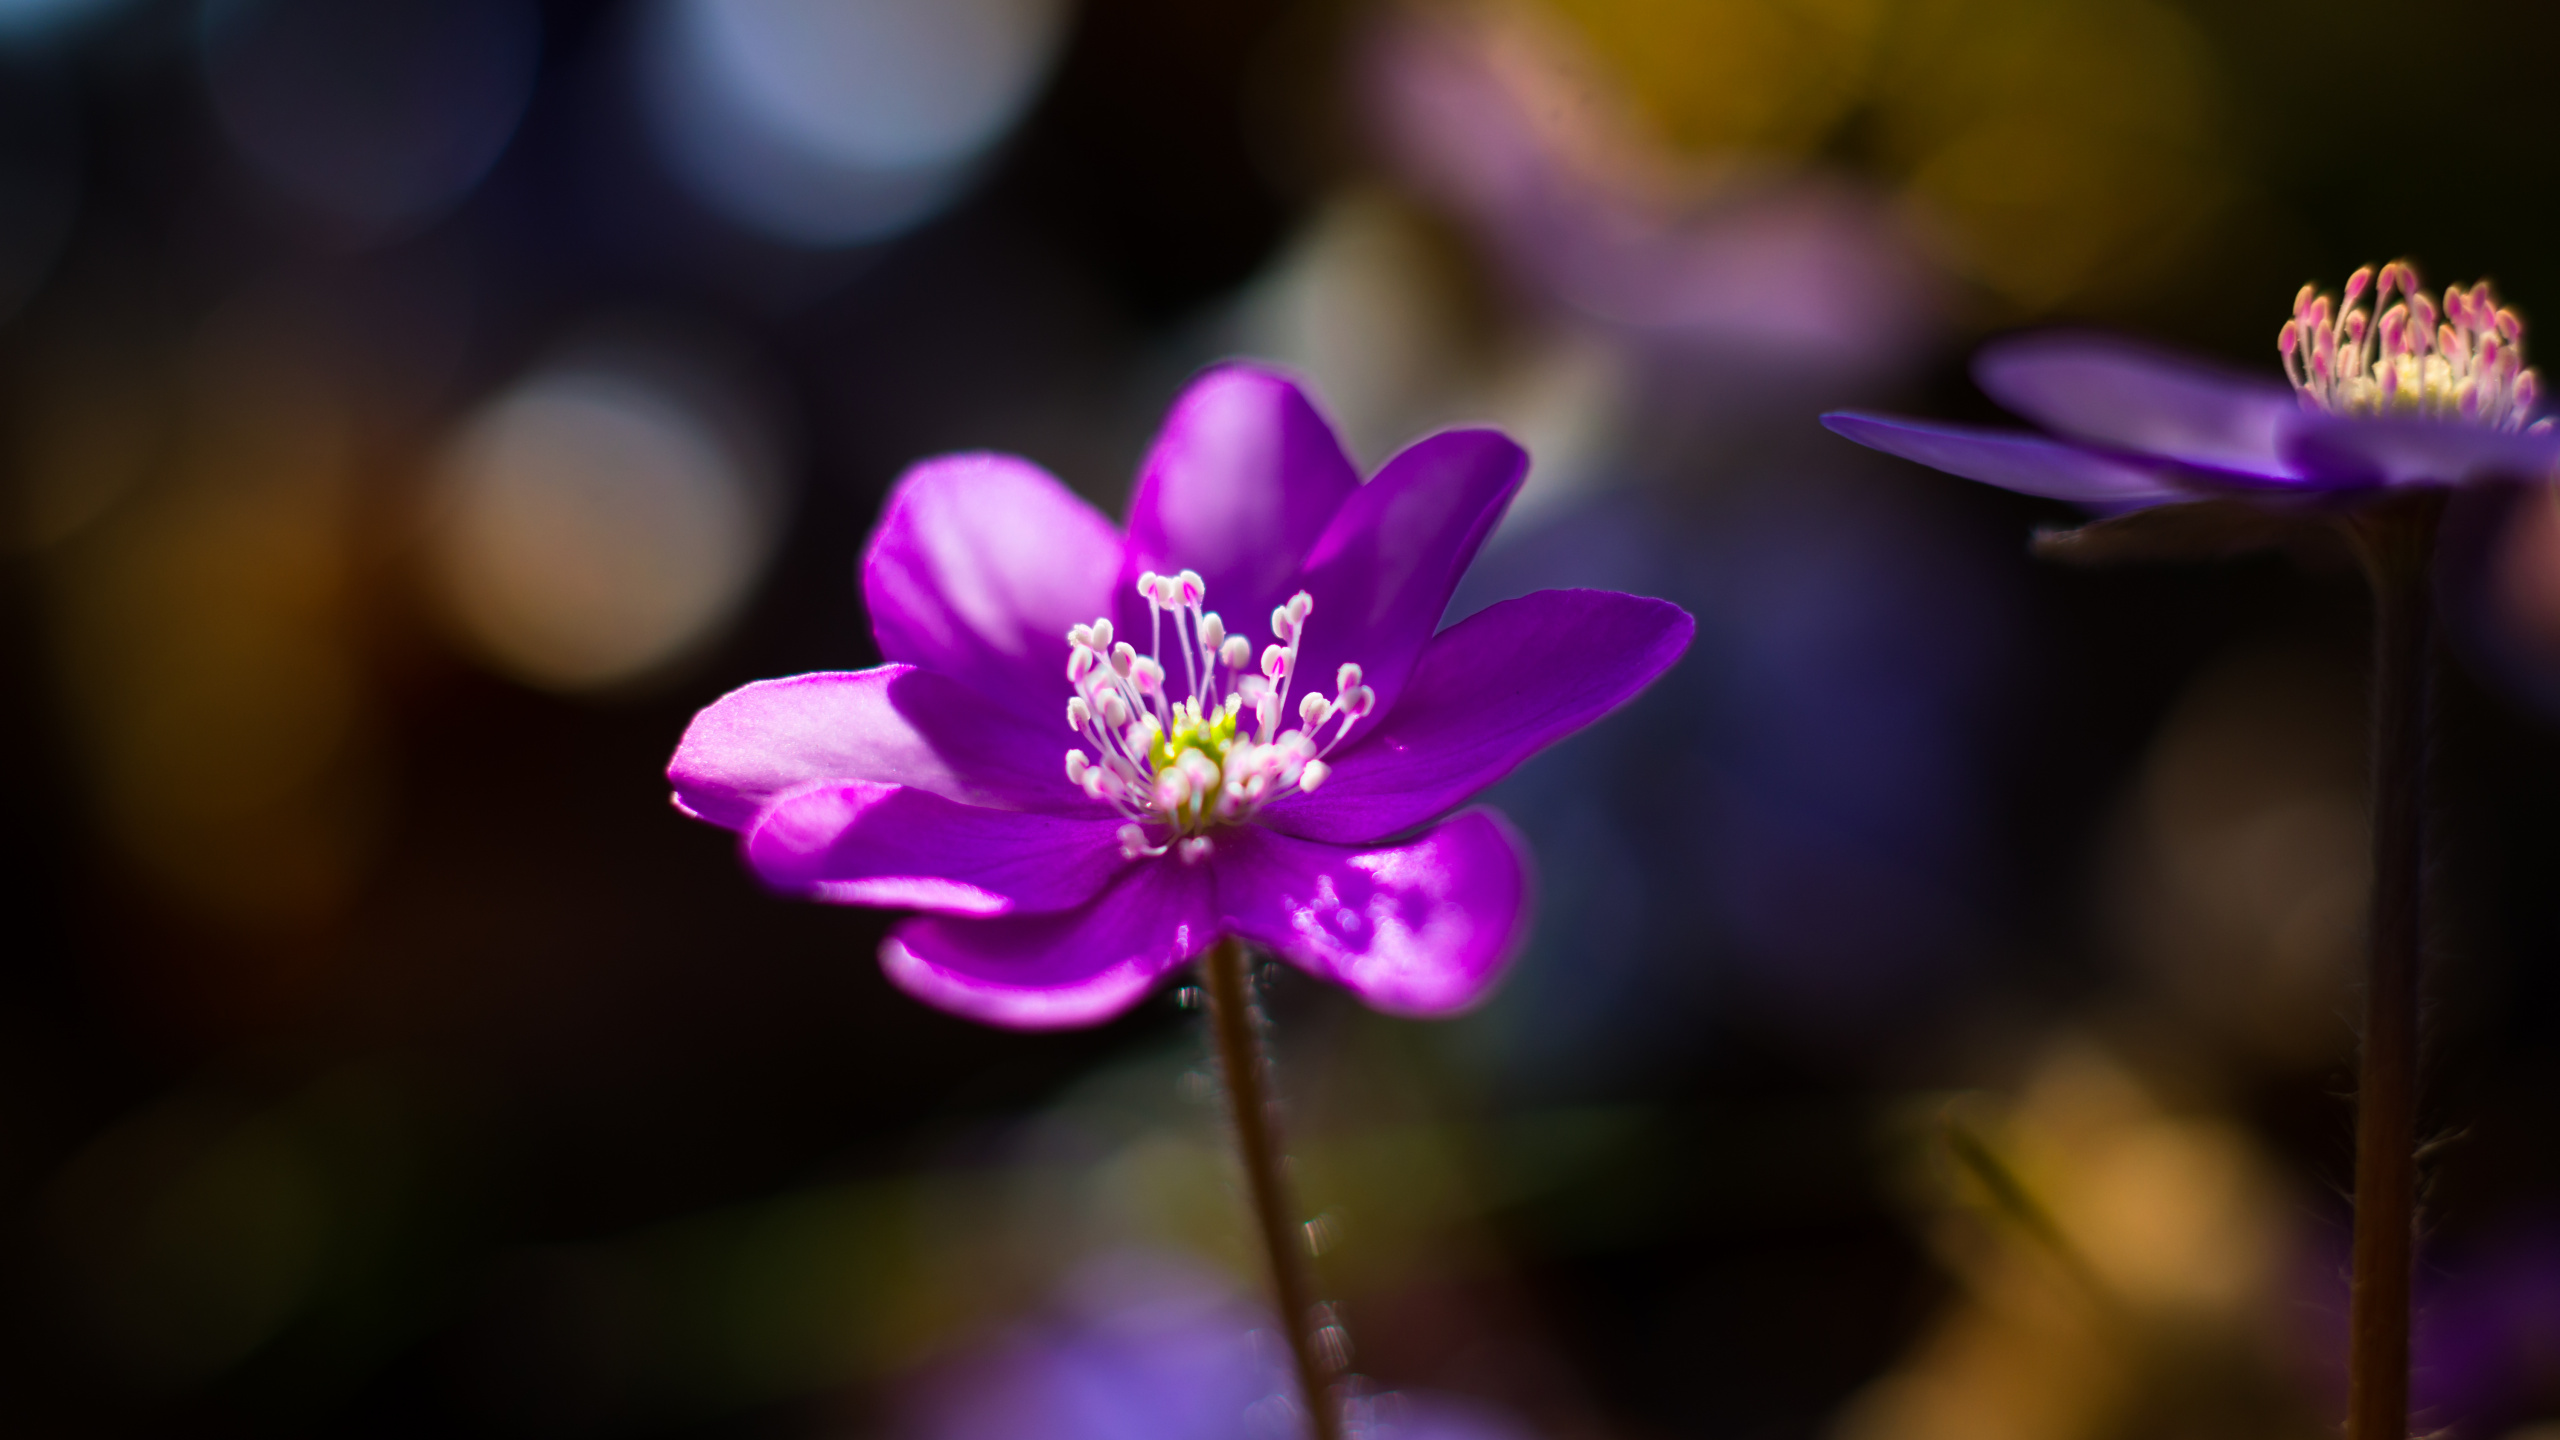 显花植物, 紫罗兰色, 紫色的, 弹簧, 野花 壁纸 2560x1440 允许